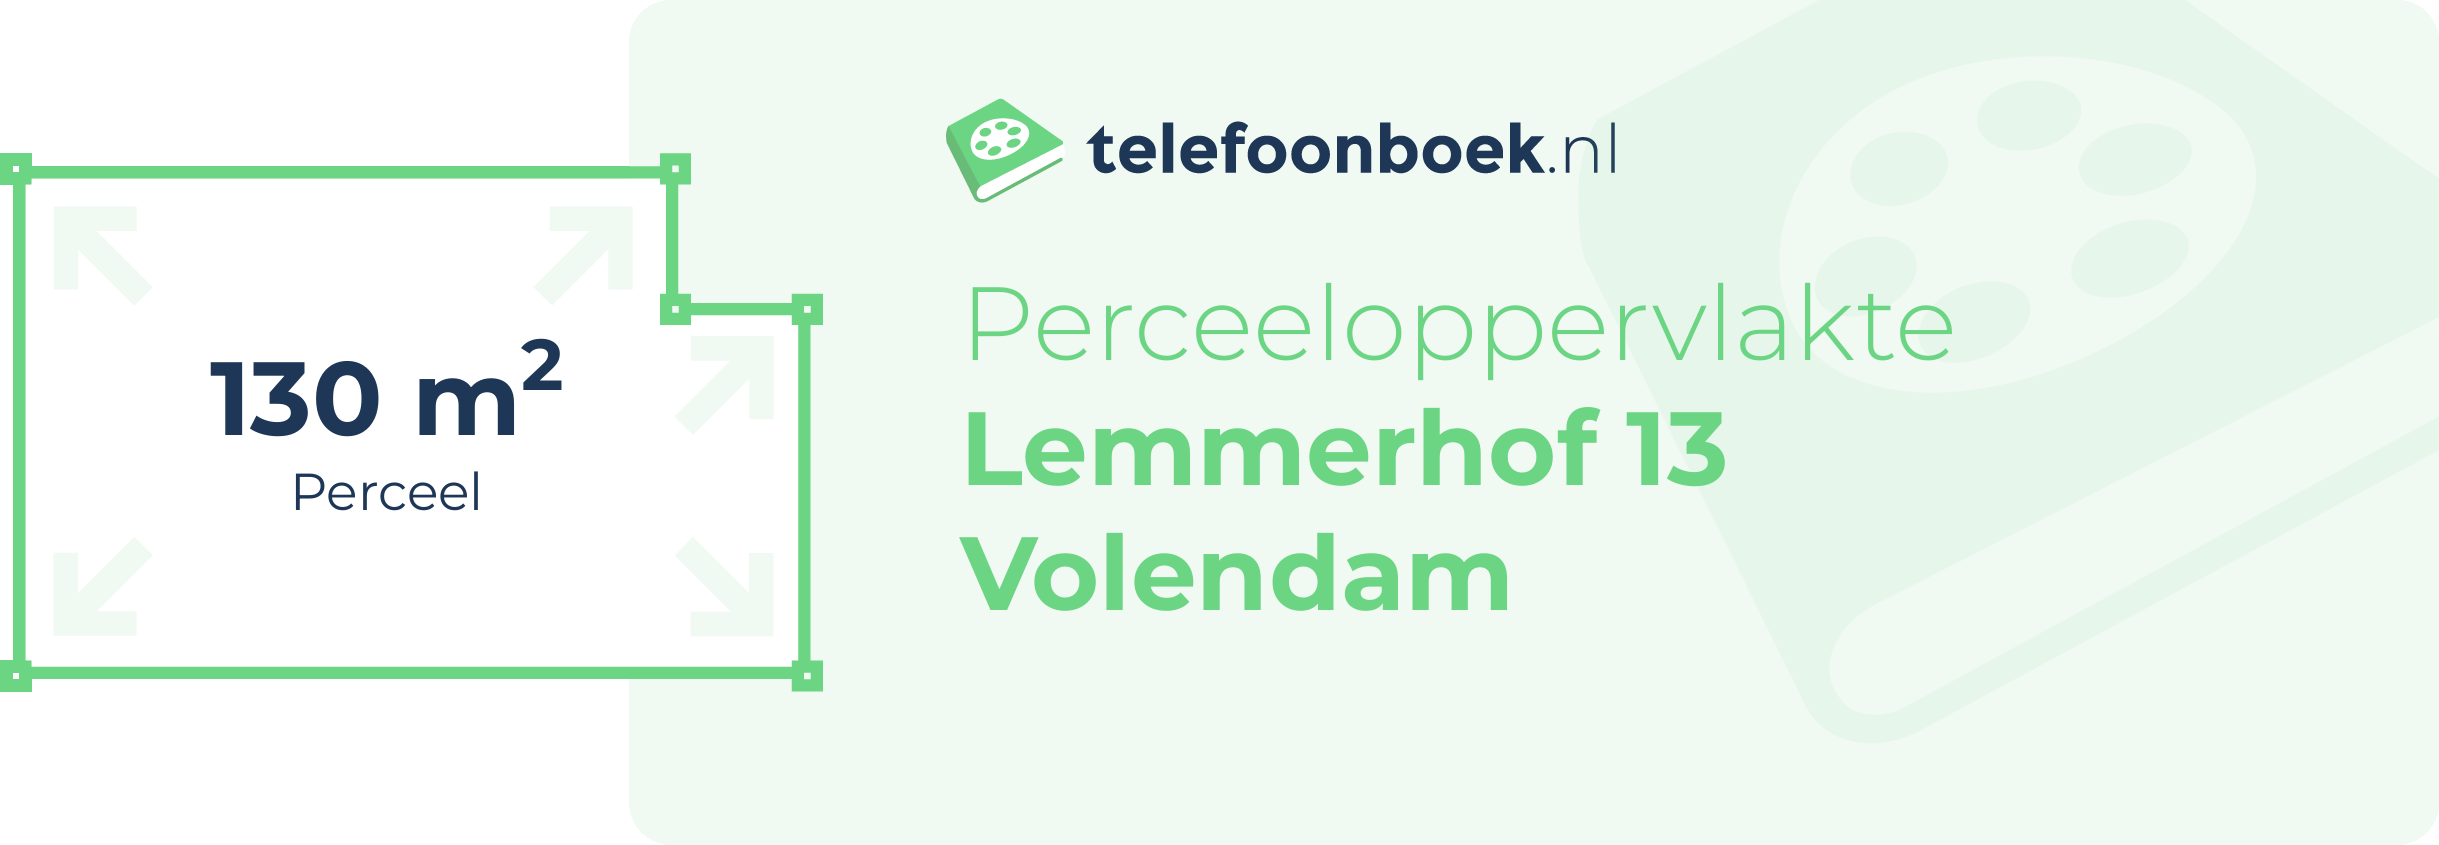 Perceeloppervlakte Lemmerhof 13 Volendam